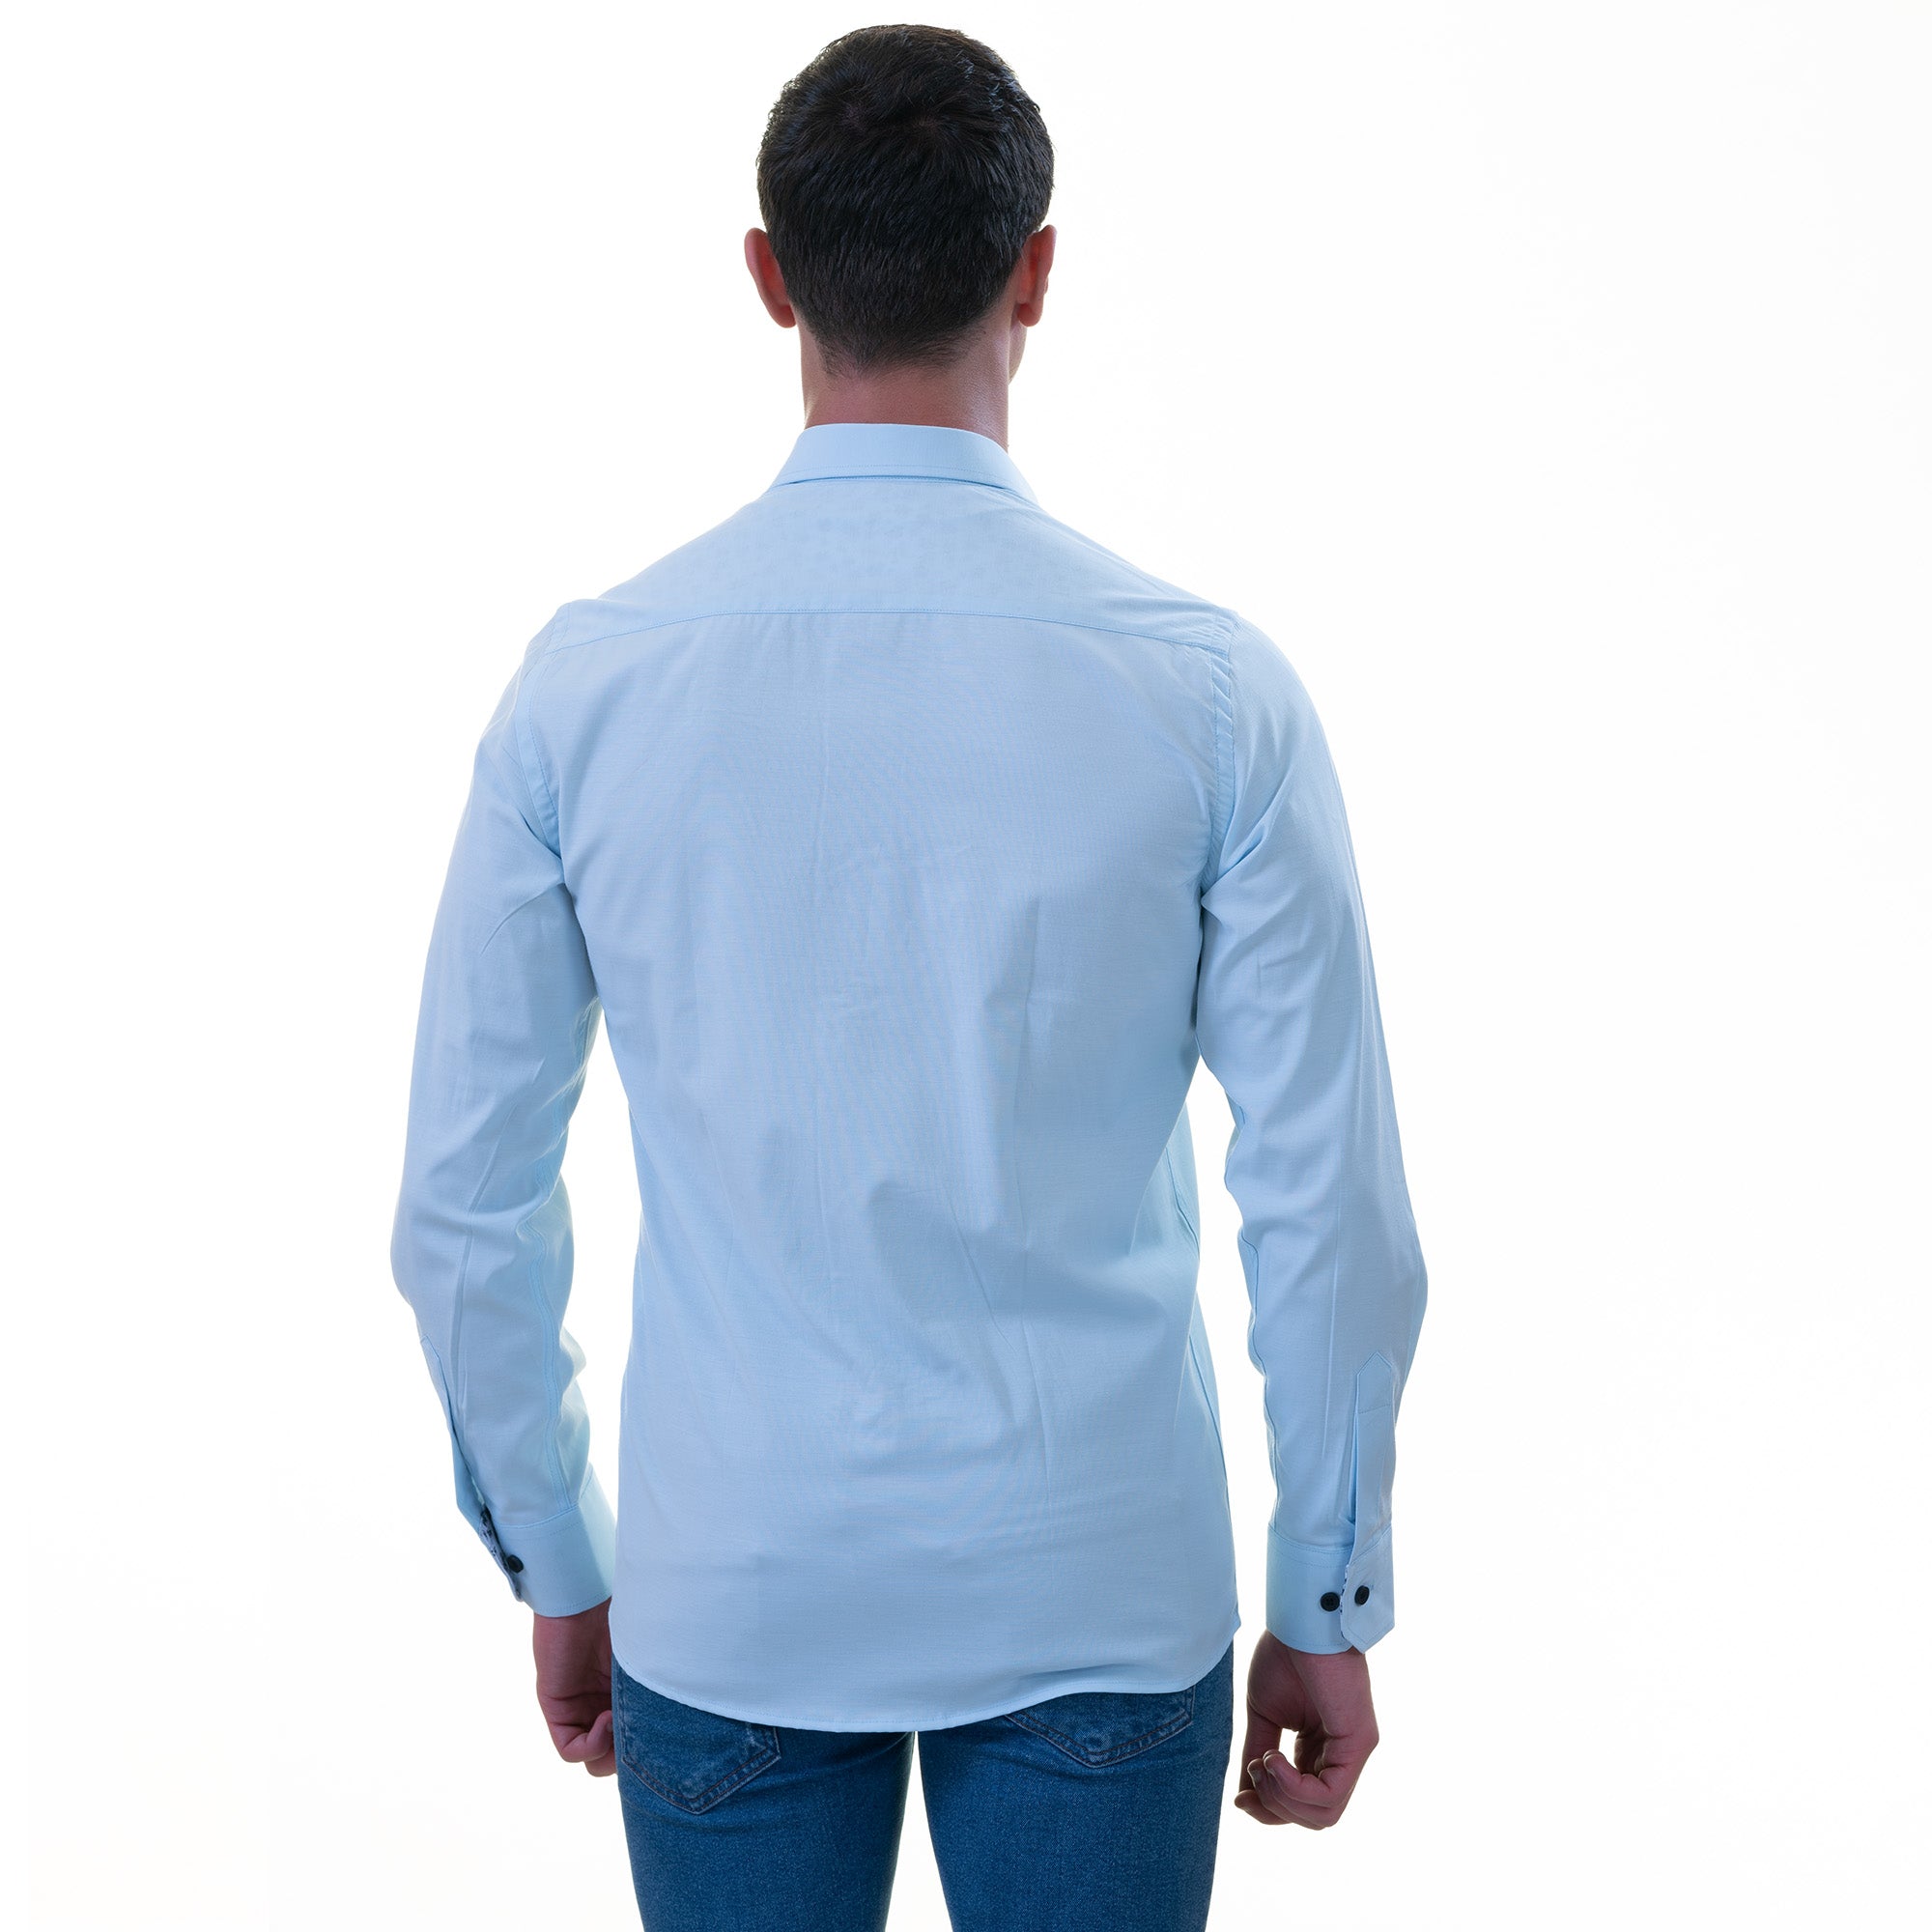 Buy CAMISA 100% Cotton Linen Print Shirts Beige Colour L Size, Slim Fit  Casual Shirts